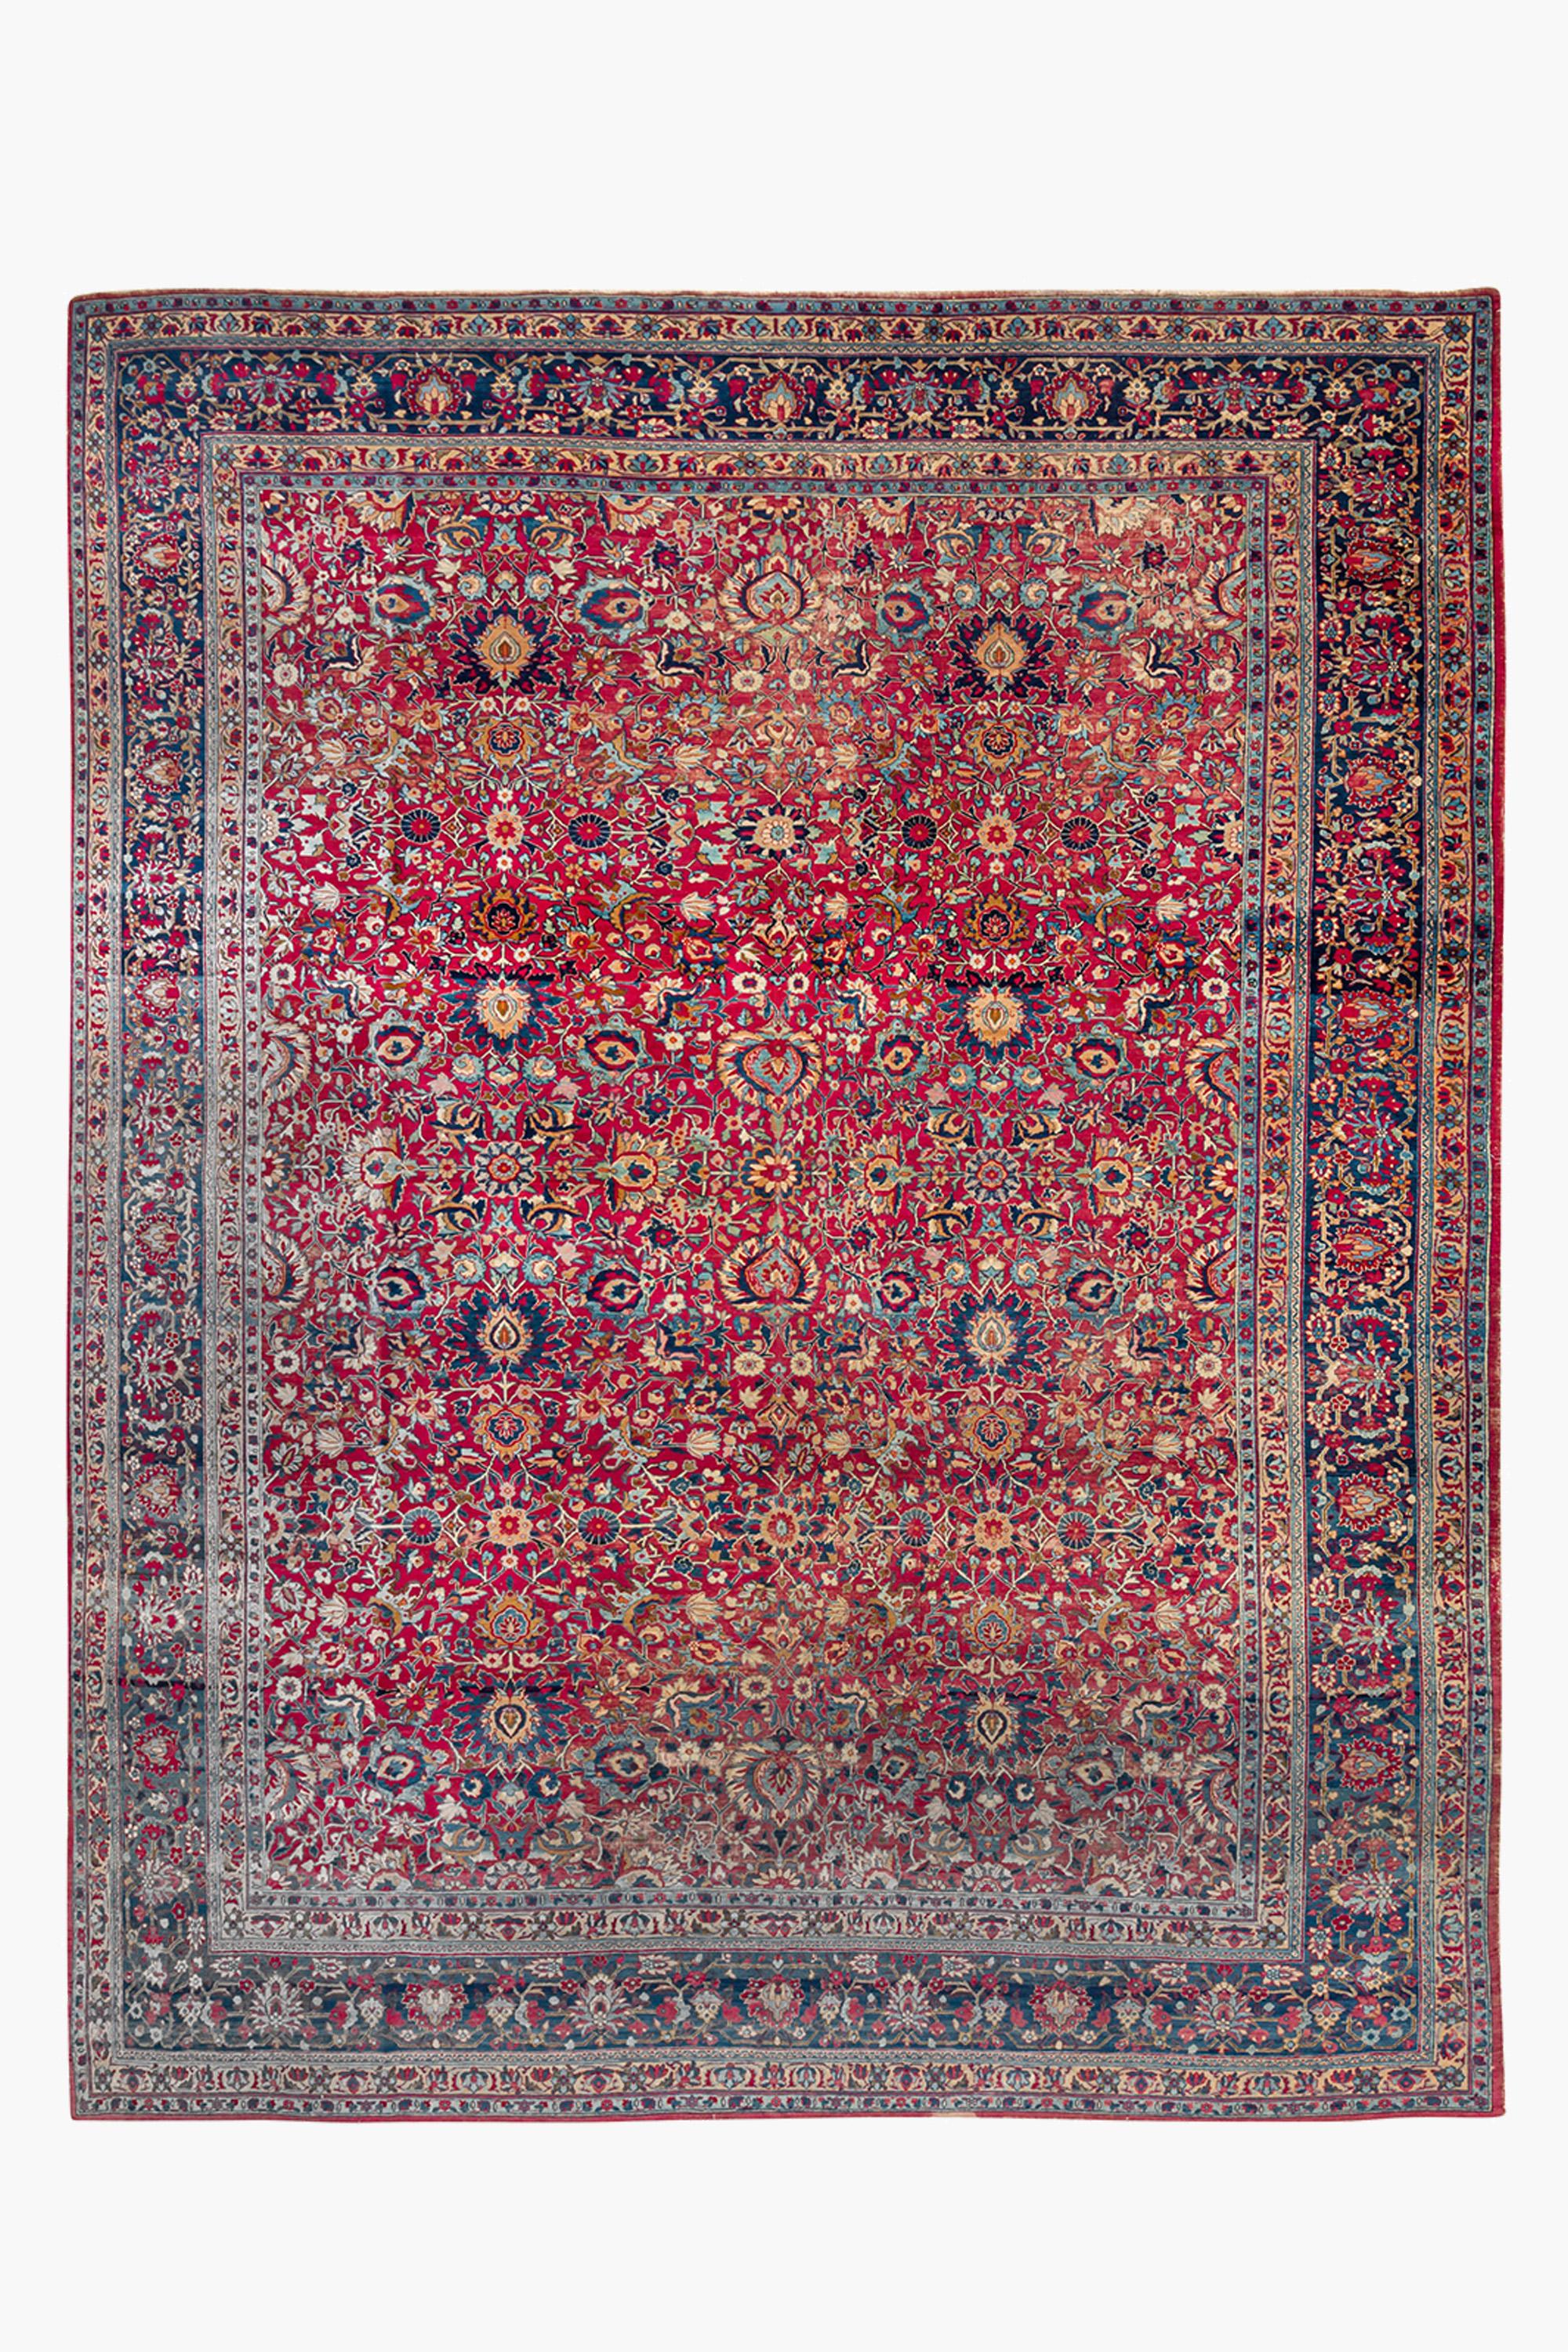 Ce joli tapis ancien de Tabriz présente un magnifique dessin d'ensemble composé de palmettes, de fleurs et de vignes polychromes.

Condit : Bon état général - une idée d'ameublement. Quelques usures localisées sur les poils, jusqu'au col du nœud par